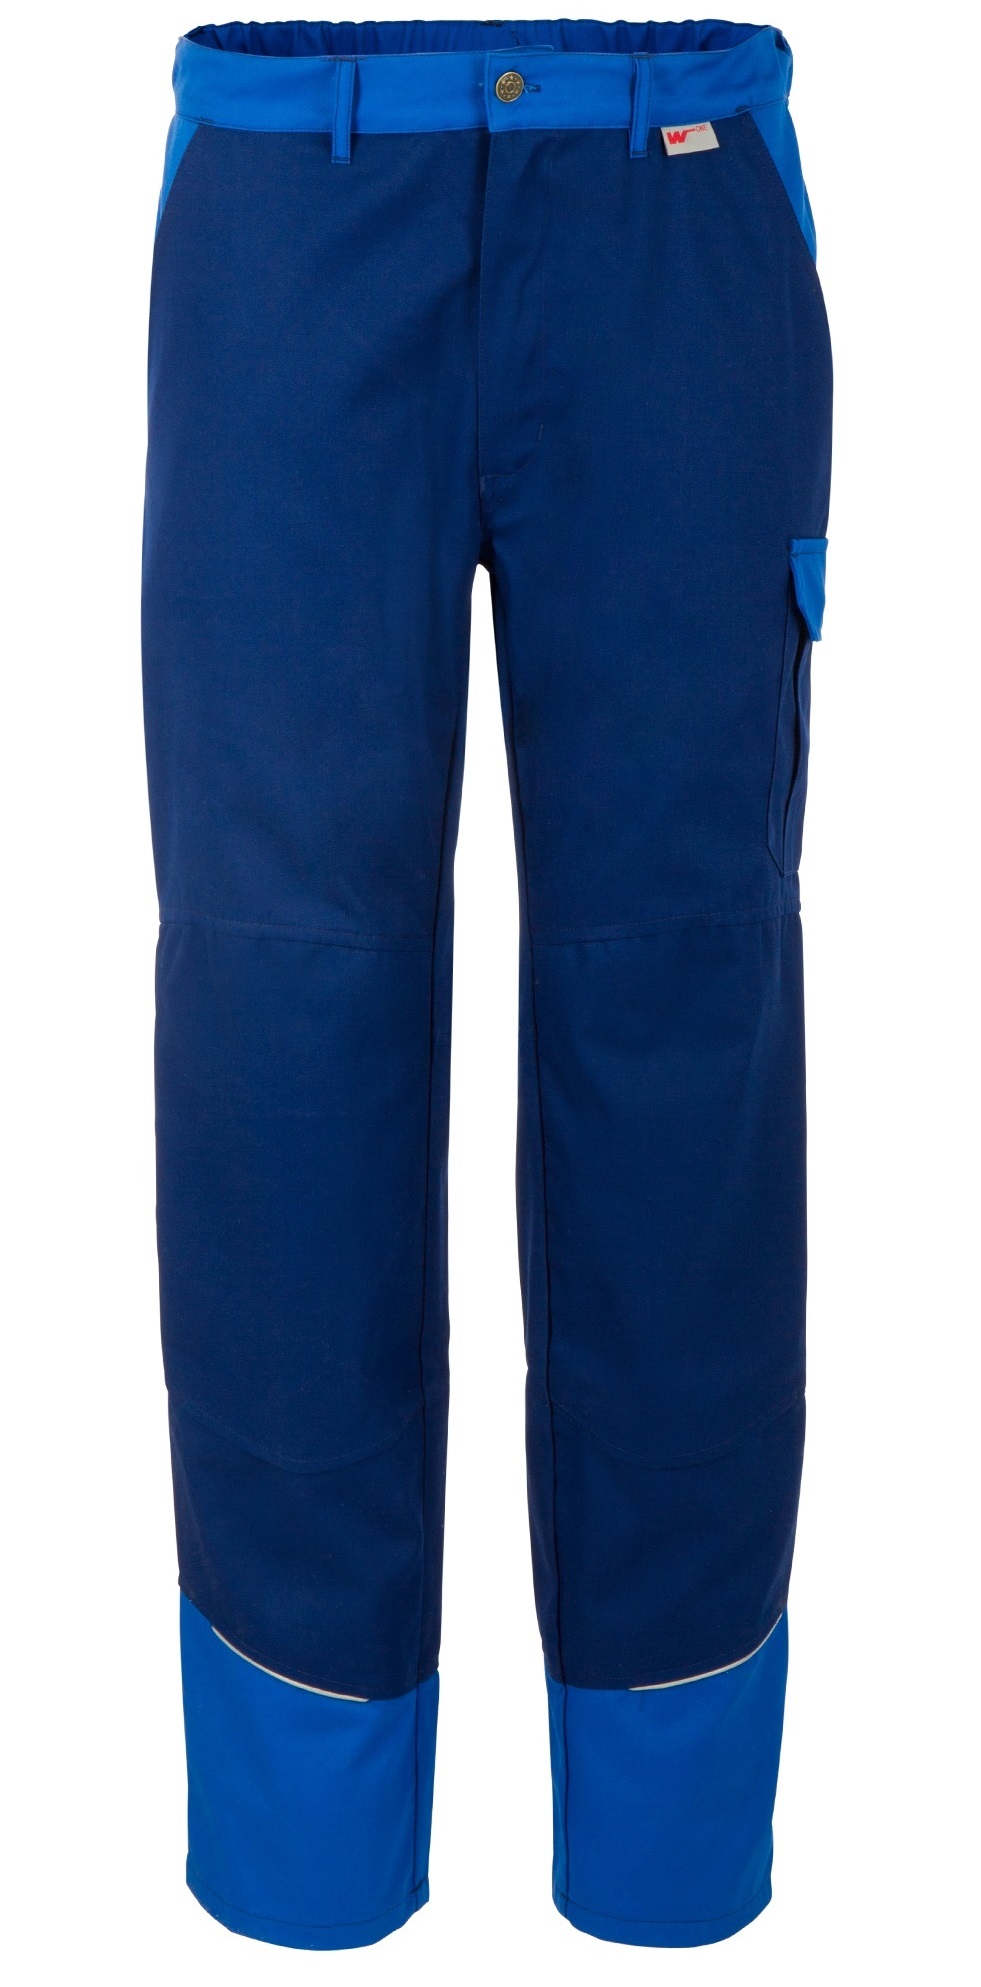 WATEX-Workwear-Bundhose W-One, comoblau / azurblau